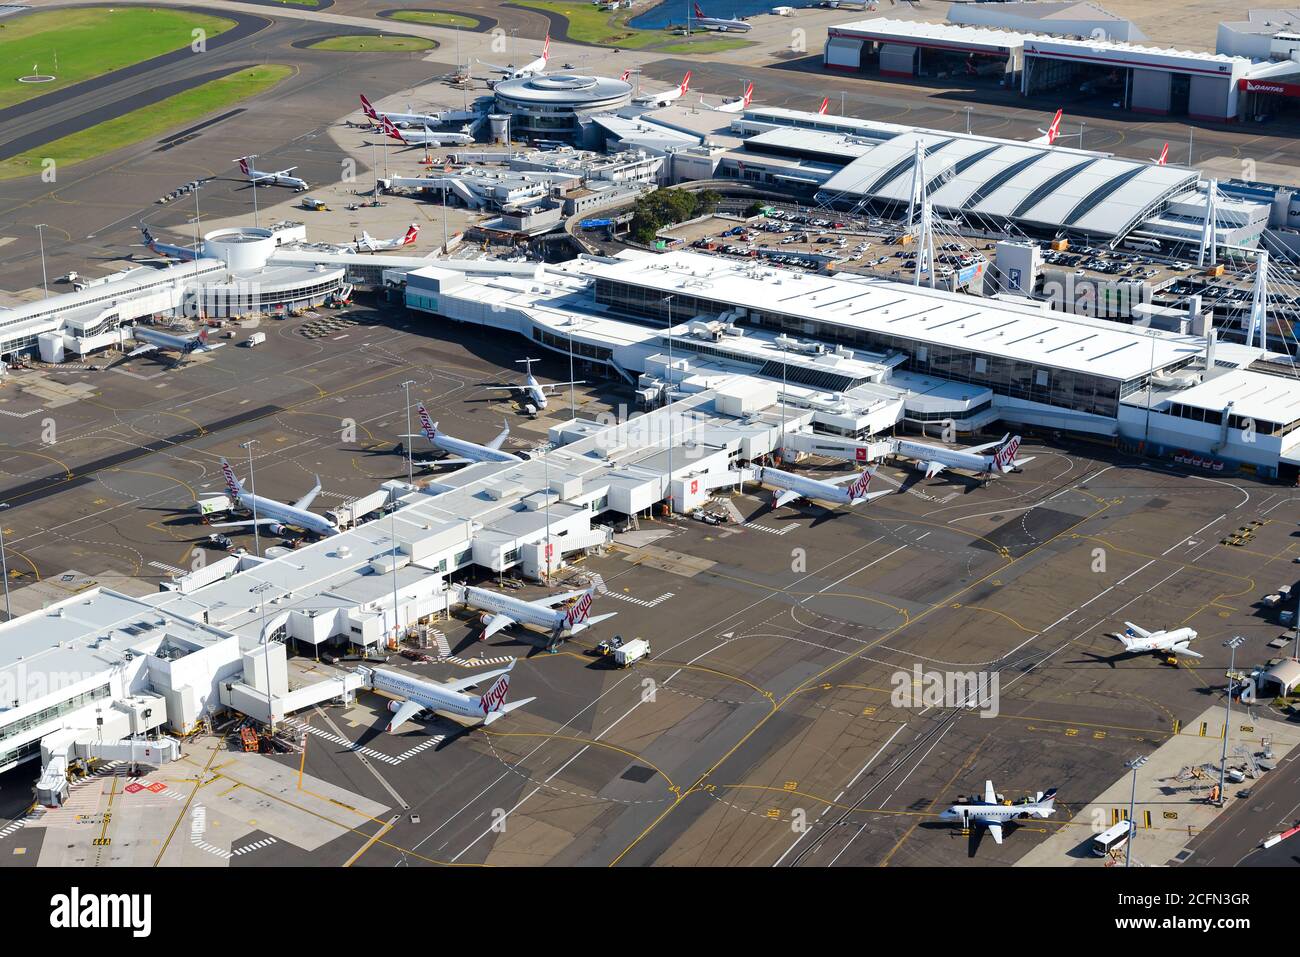 Inlandsterminal 2 und Terminal 3 am Flughafen Sydney. Luftaufnahme des Terminals für Inlandsflüge in Australien mit Virgin Australia und Qantas. Stockfoto